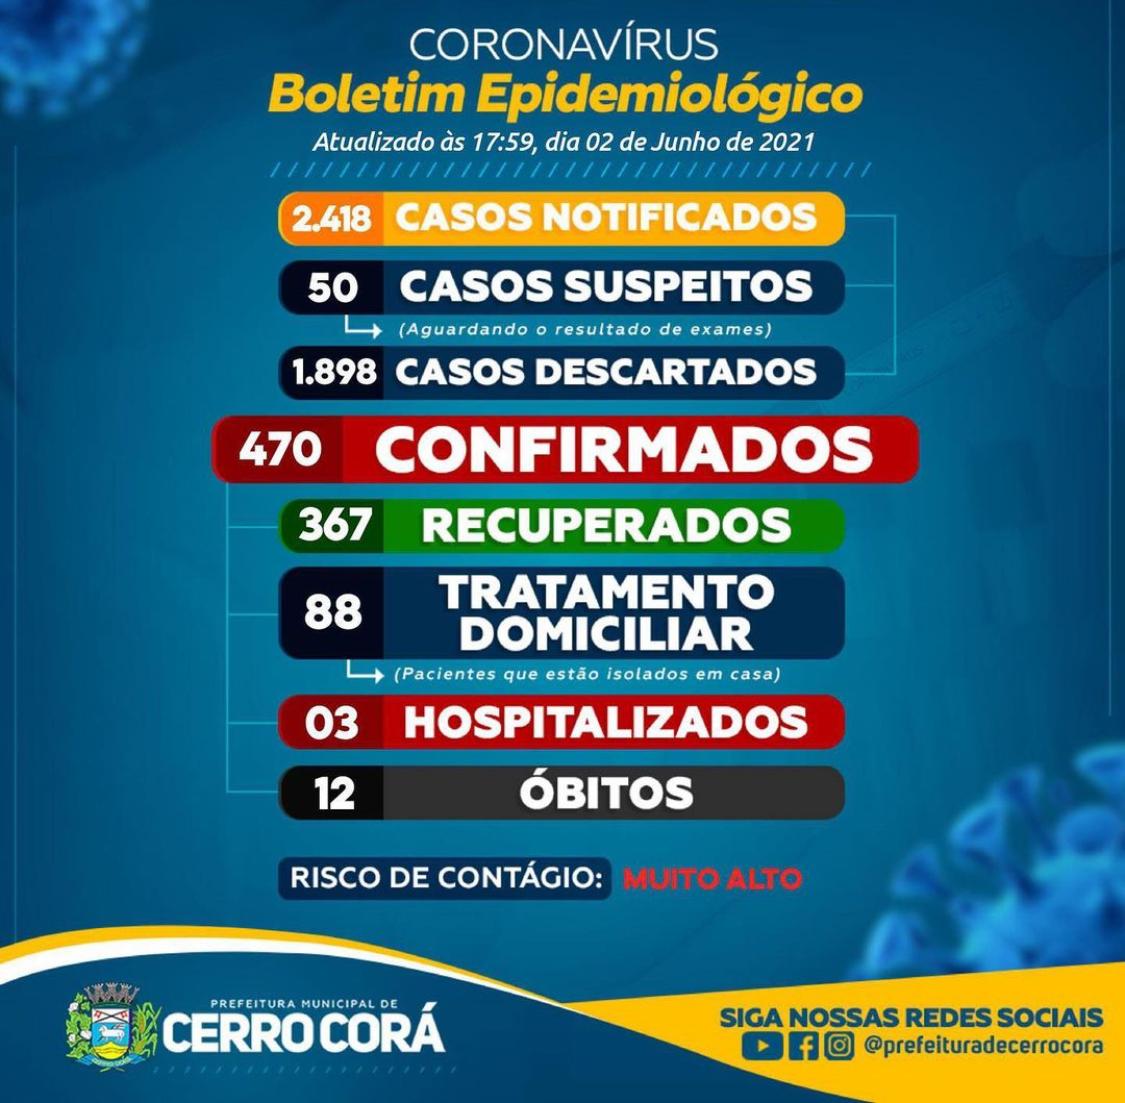 Boletim Epidemiológico em Cerro Cora apresenta diminuição nos casos confirmados